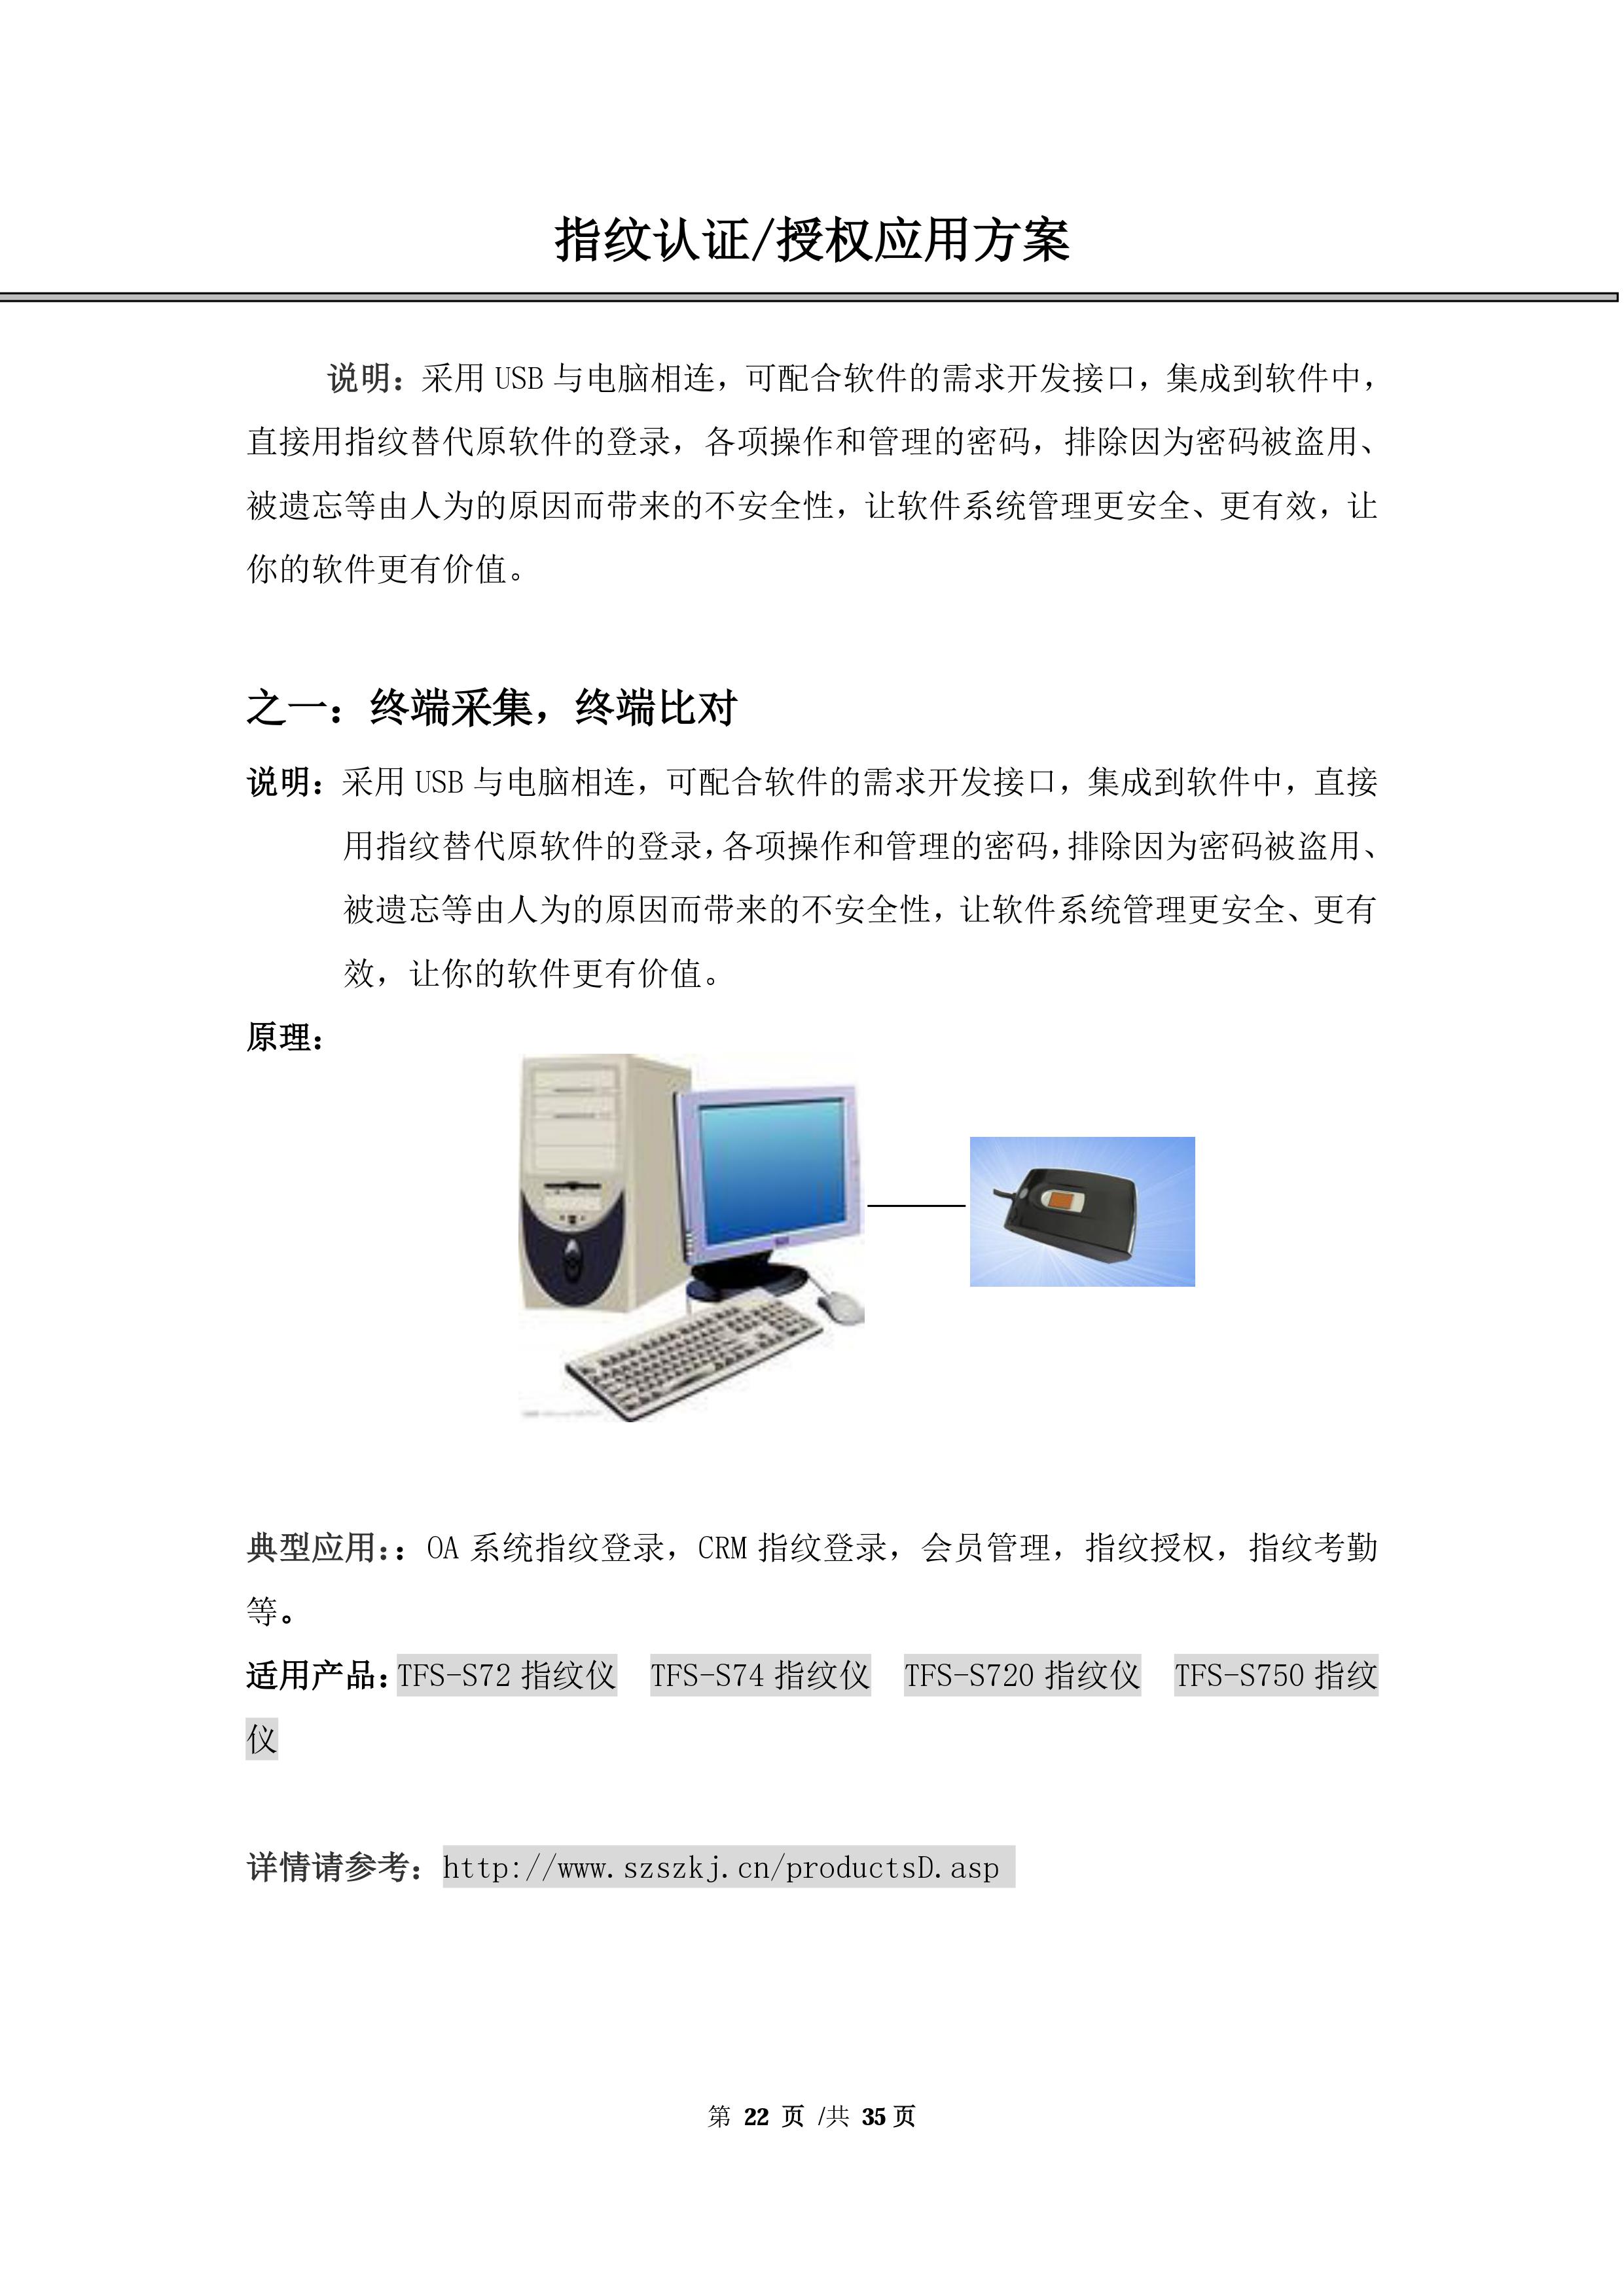 嵌入式指纹比对方案_PC端一卡通管理系统生产厂家-深圳市十指科技有限公司